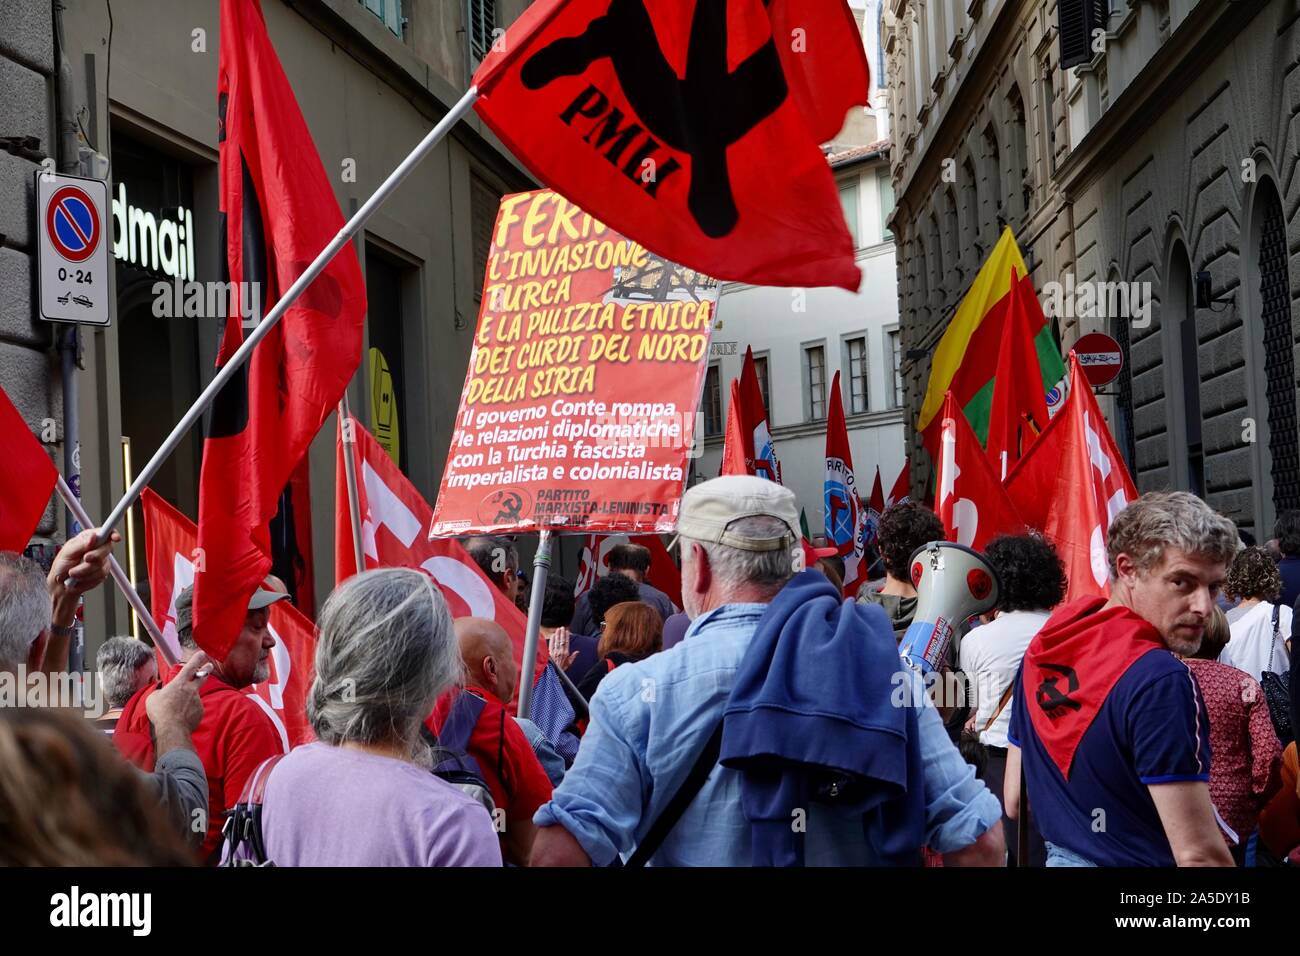 Manifestazione per la pace da parte del Partito Marxista-Leninista Italiano, PMLI, un partito comunista italiano, Firenze, Italia. Chiamata per una sosta per l'invasione turca e la pulizia etnica contro i curdi, Foto Stock